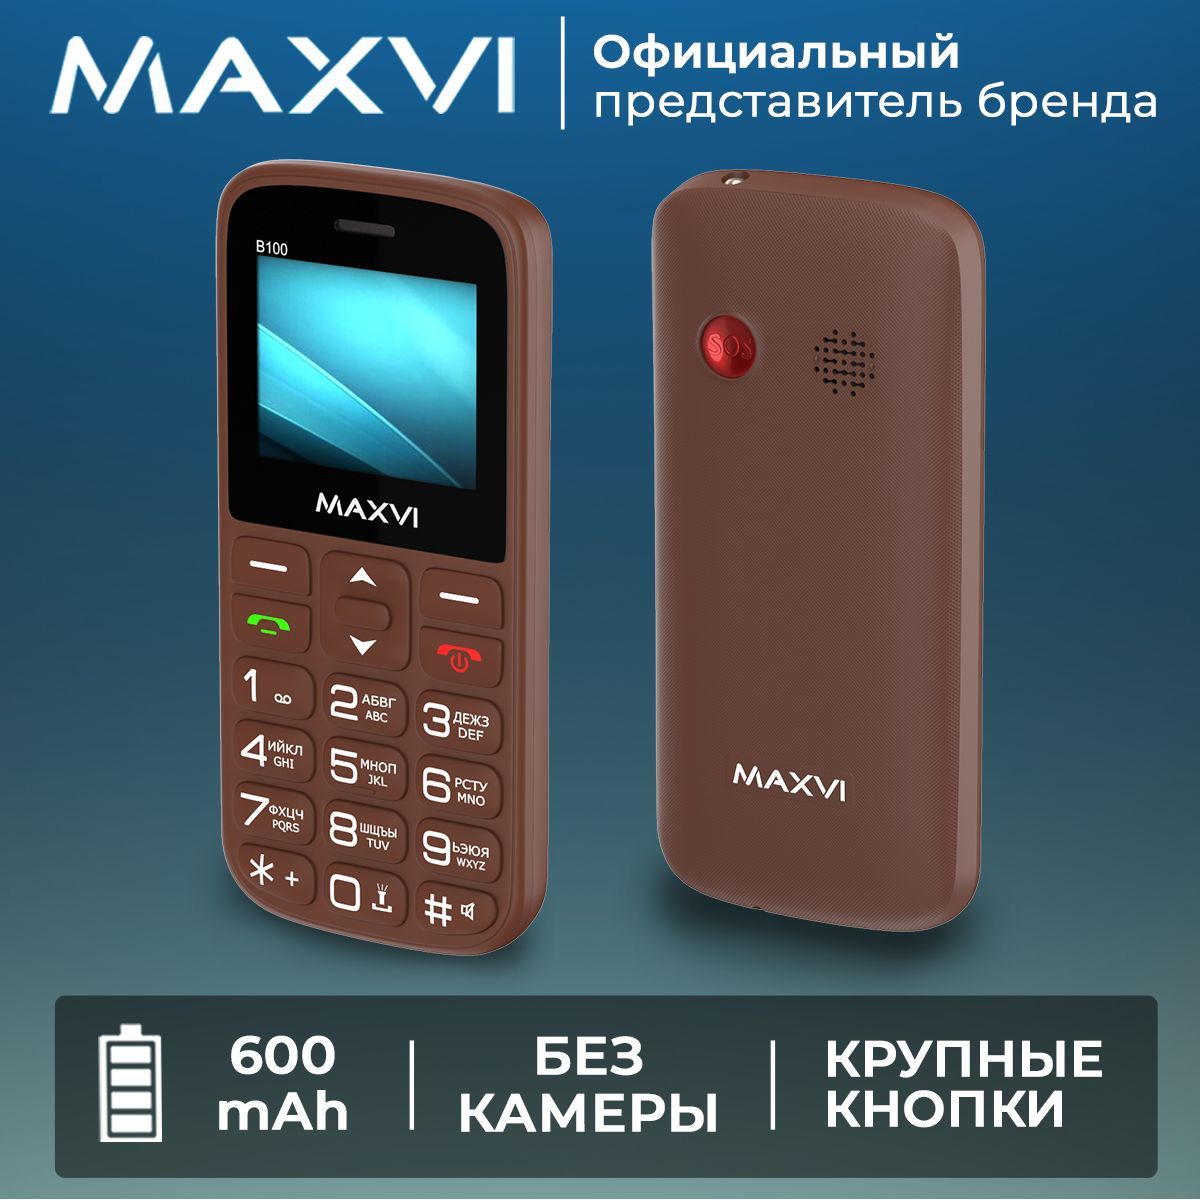 MaxviМобильныйтелефонB100/кнопкаSOS/громкийзвук/крупныеклавиши/яркийфонарик,коричневый